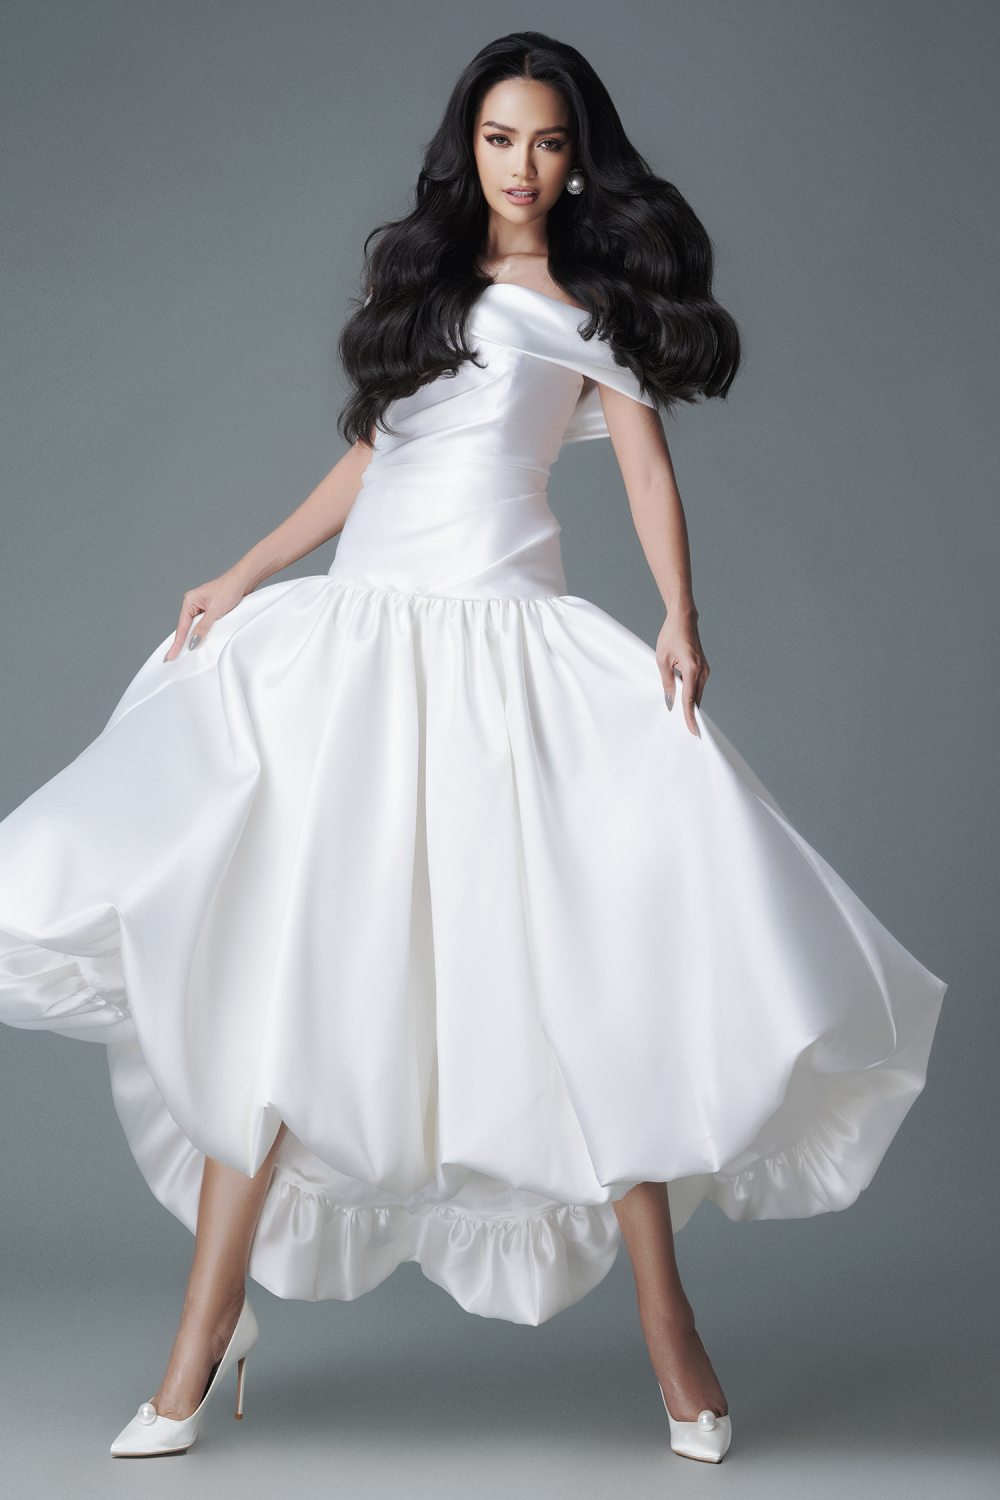 Hoa hậu Ngọc Châu thanh lịch trong sắc trắng - ảnh 1